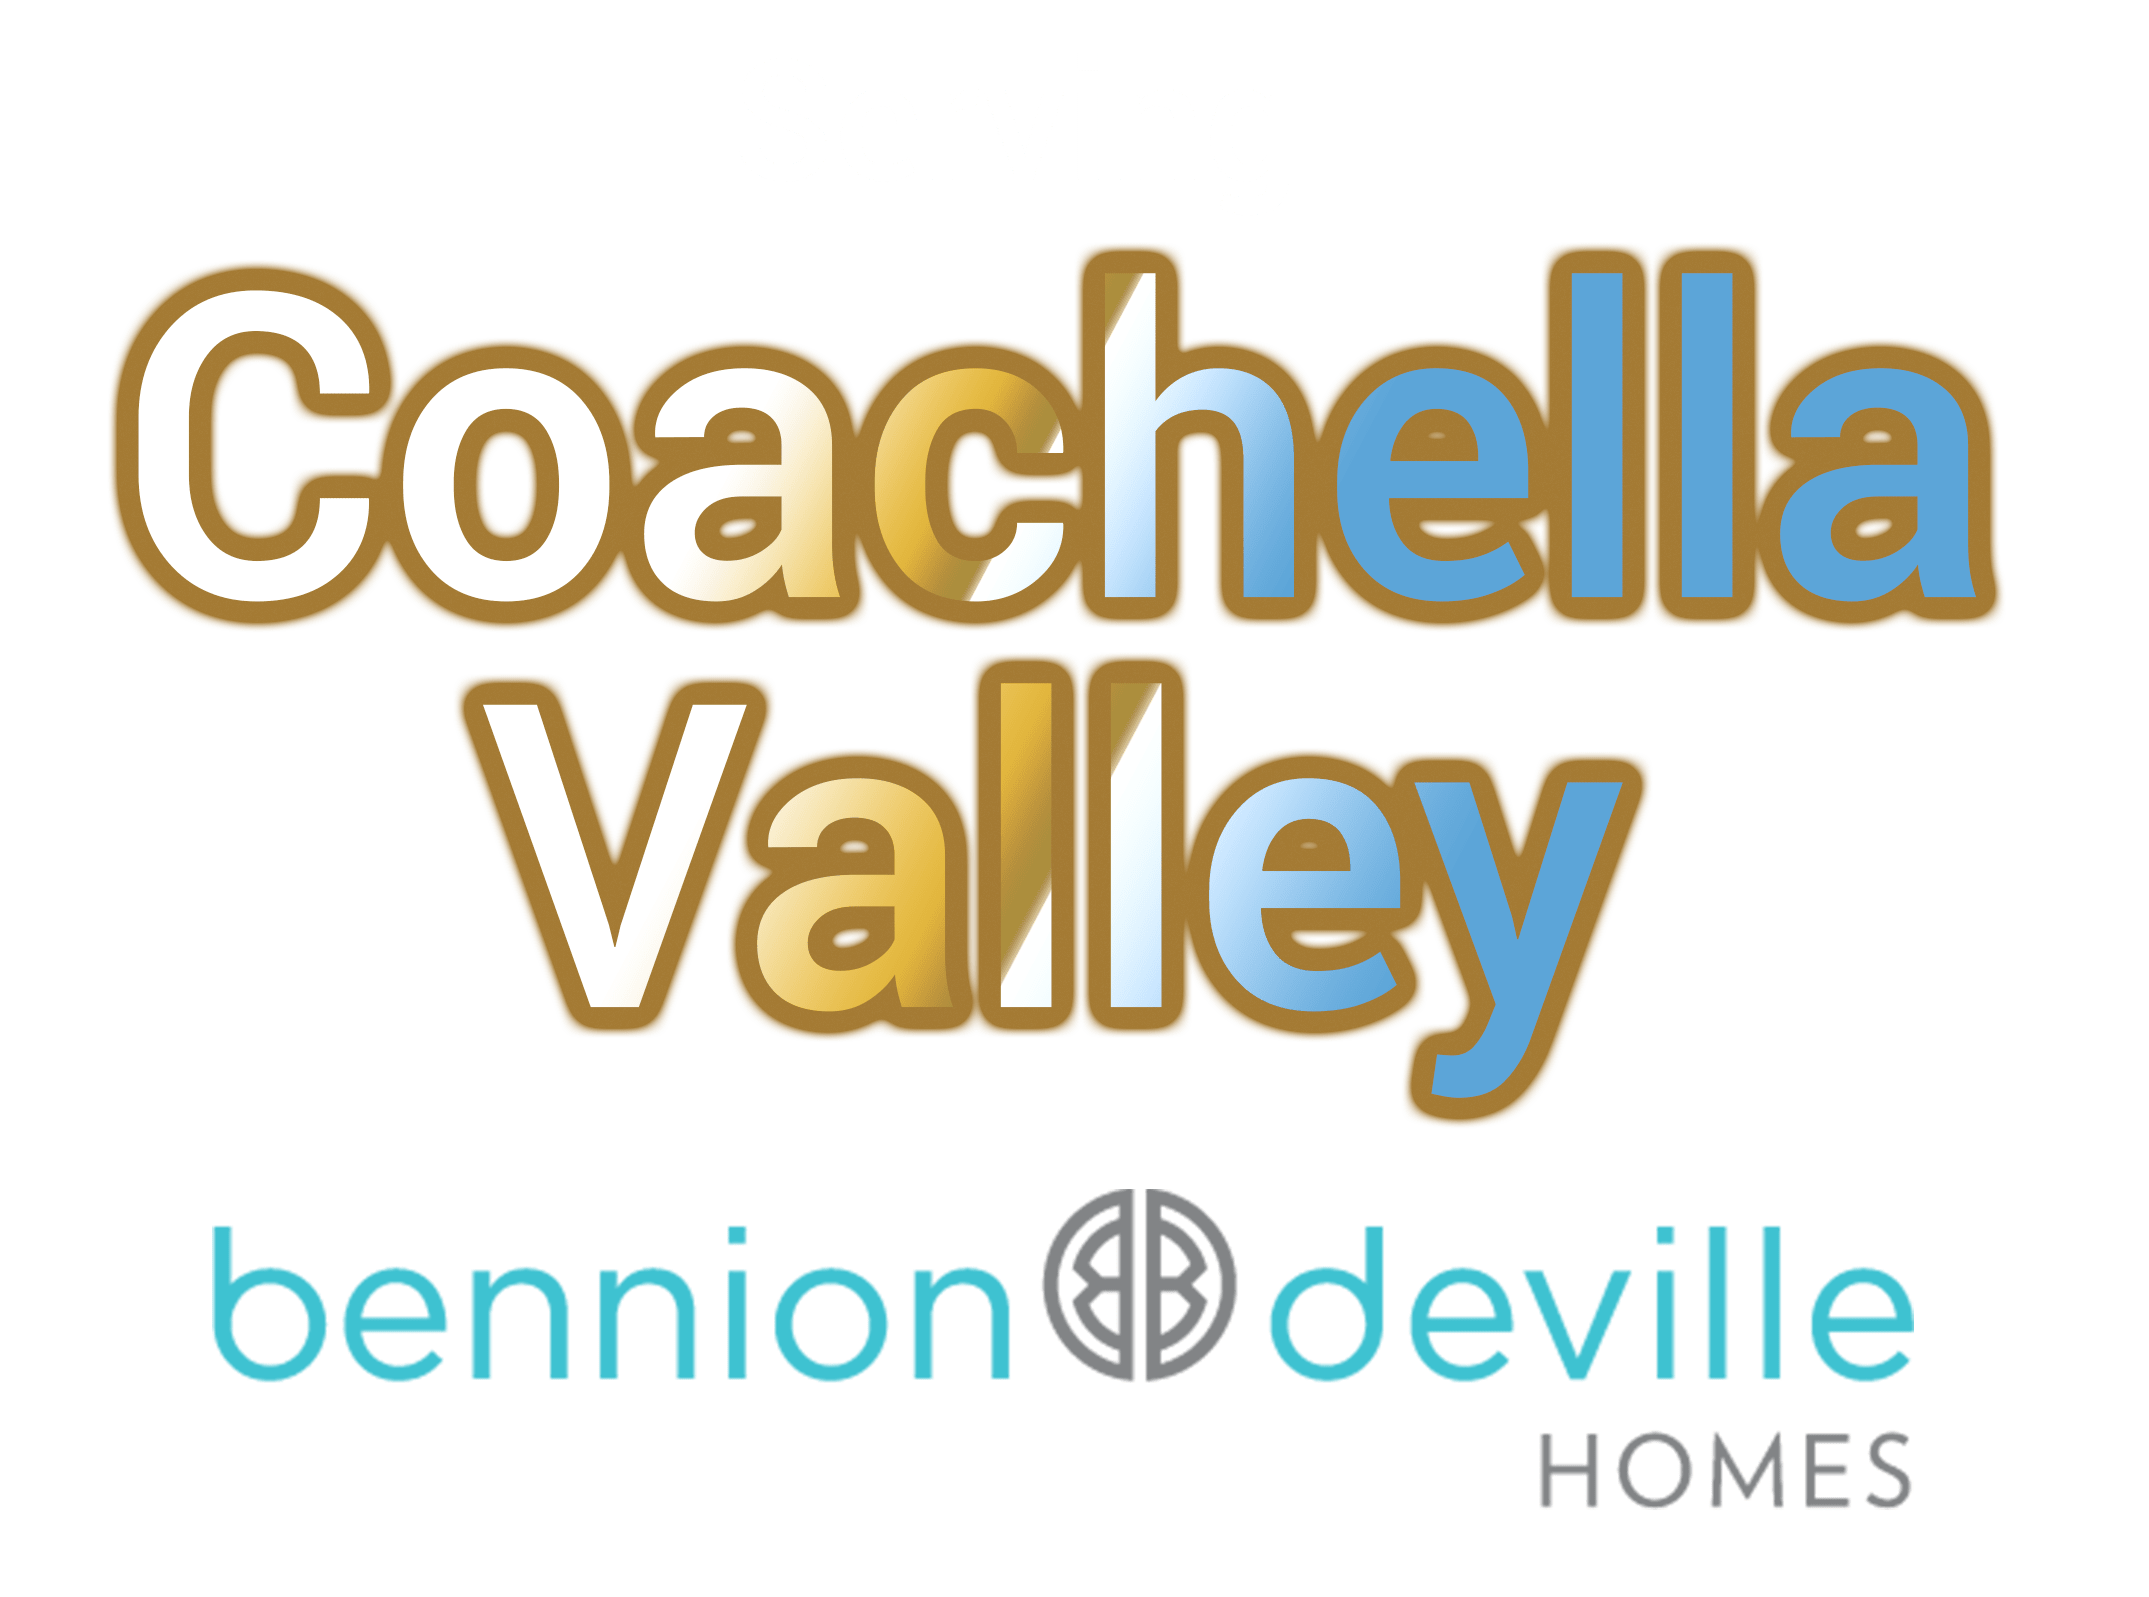 Serving Coachella Valley, Bennion Deville Homes